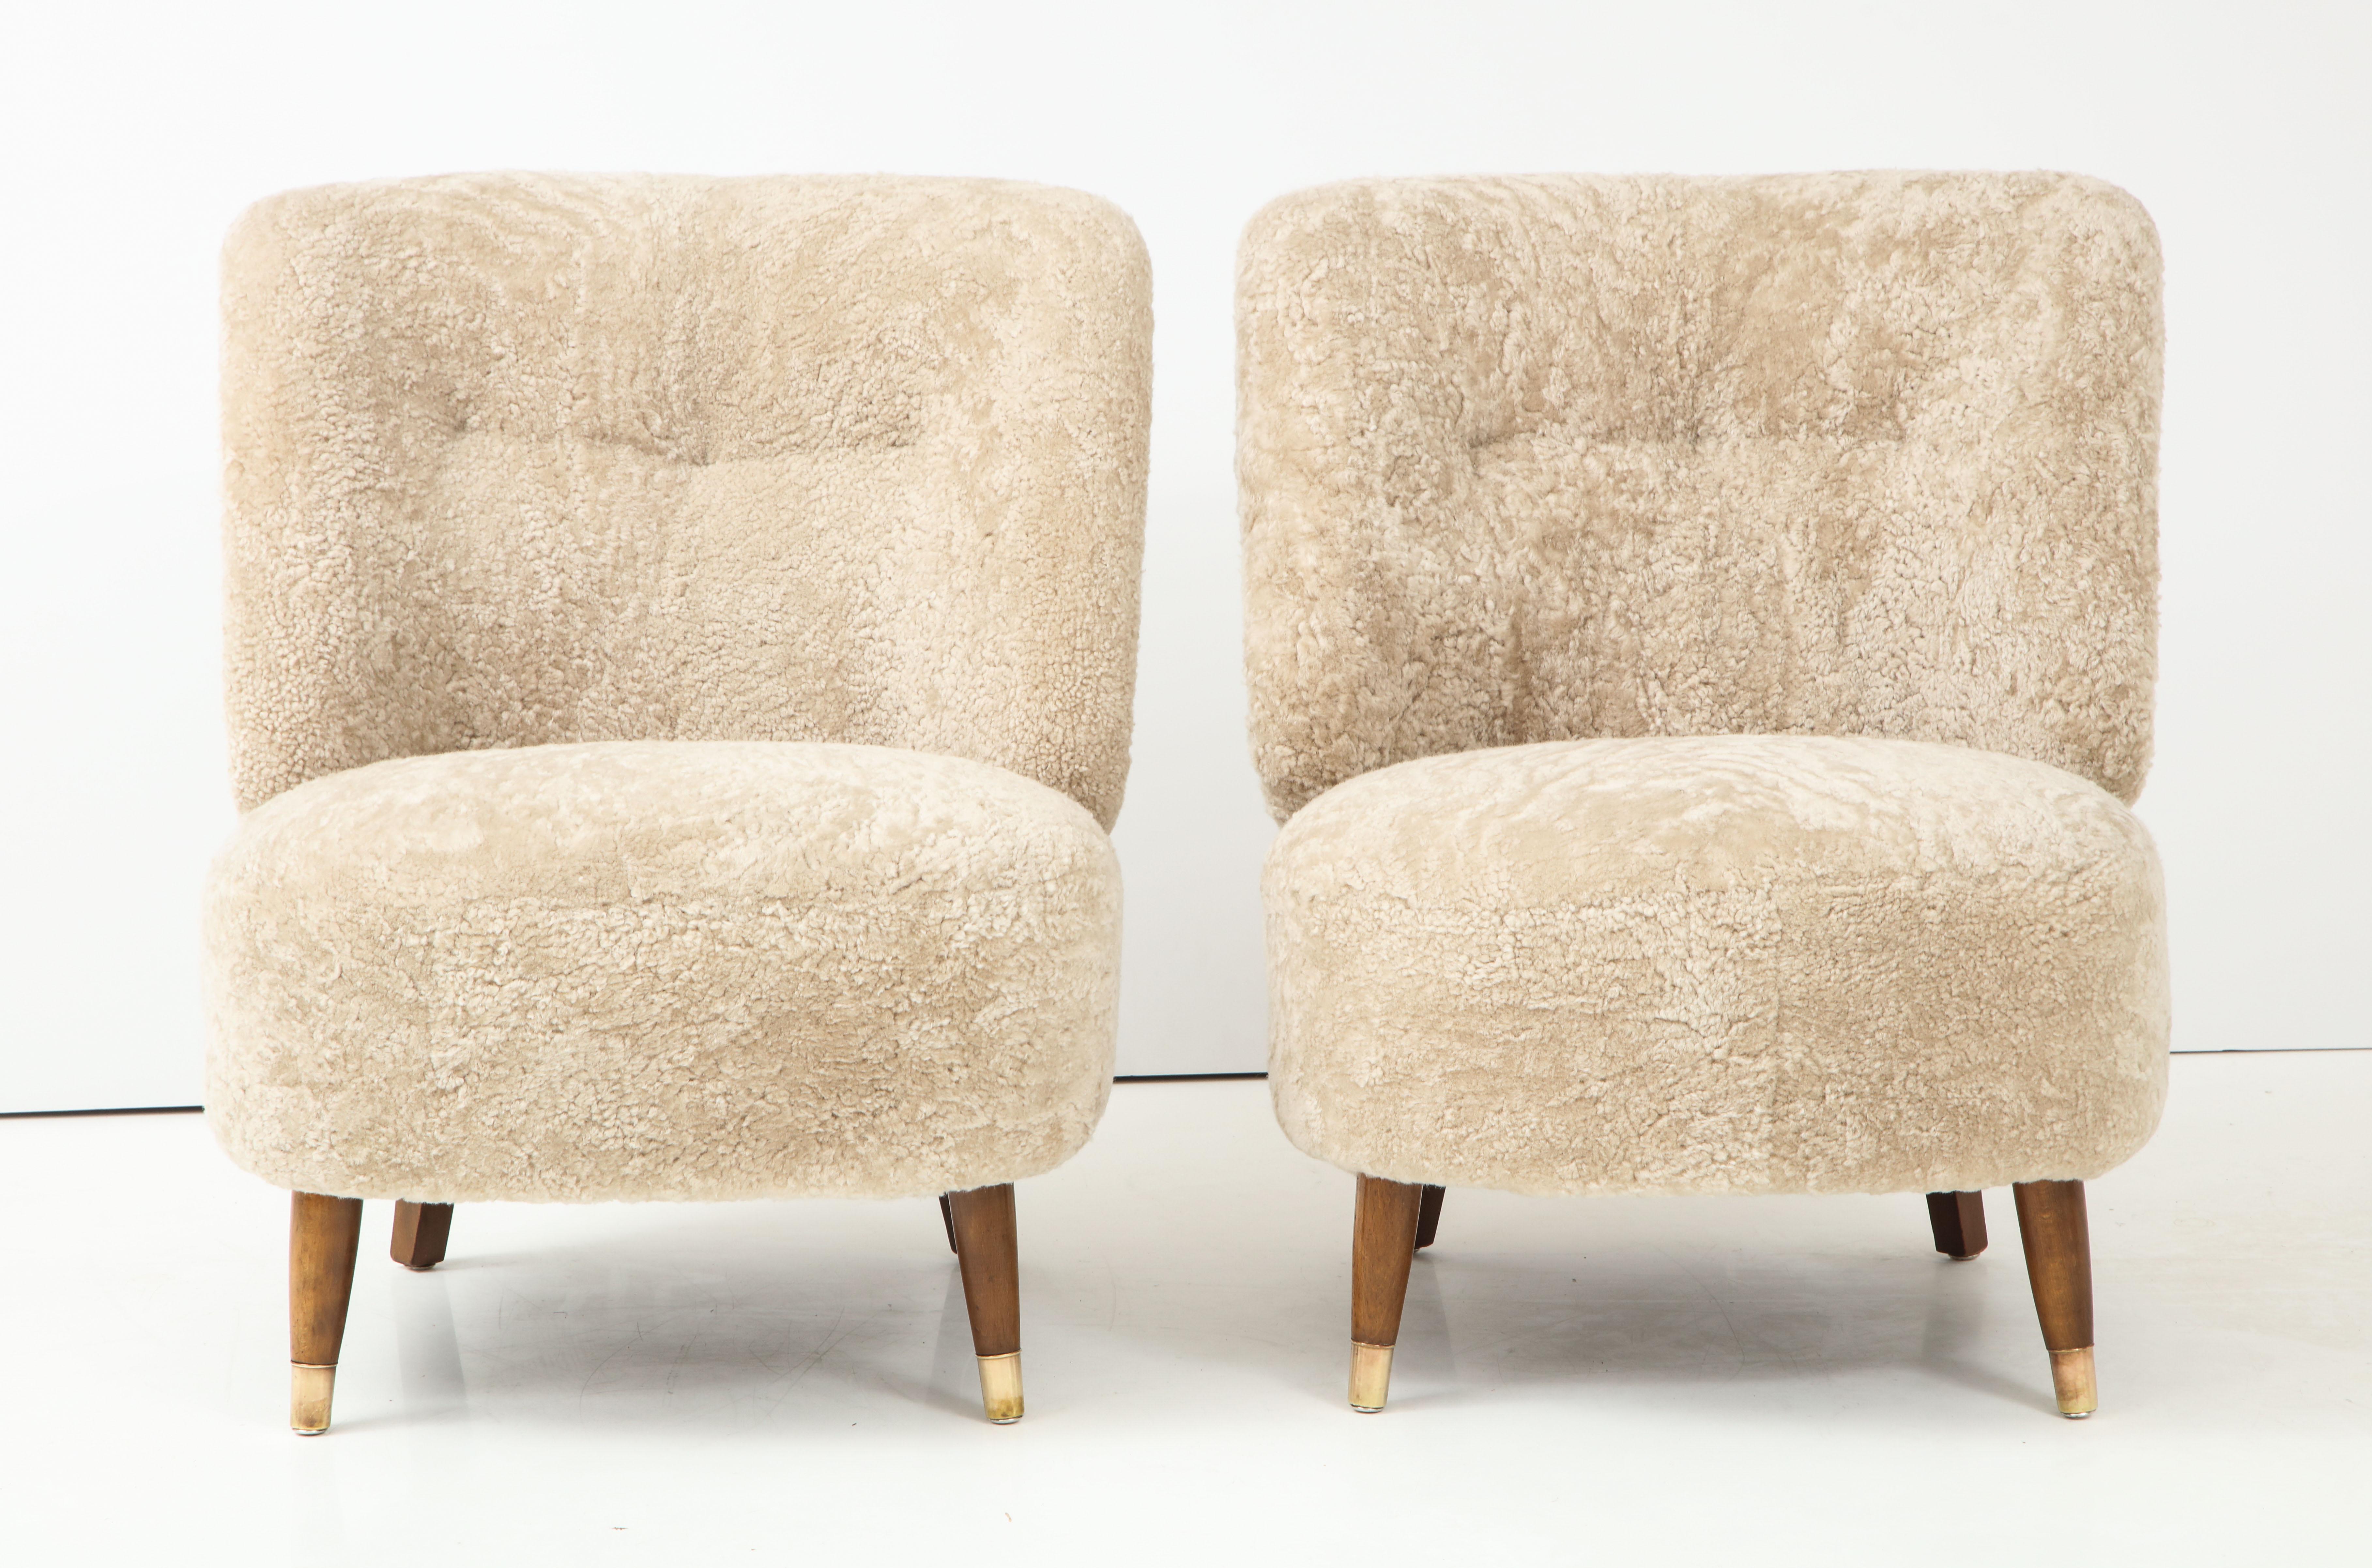 Scandinavian Modern Pair of Danish Design Sheepskin Upholstered Chairs, circa 1930s